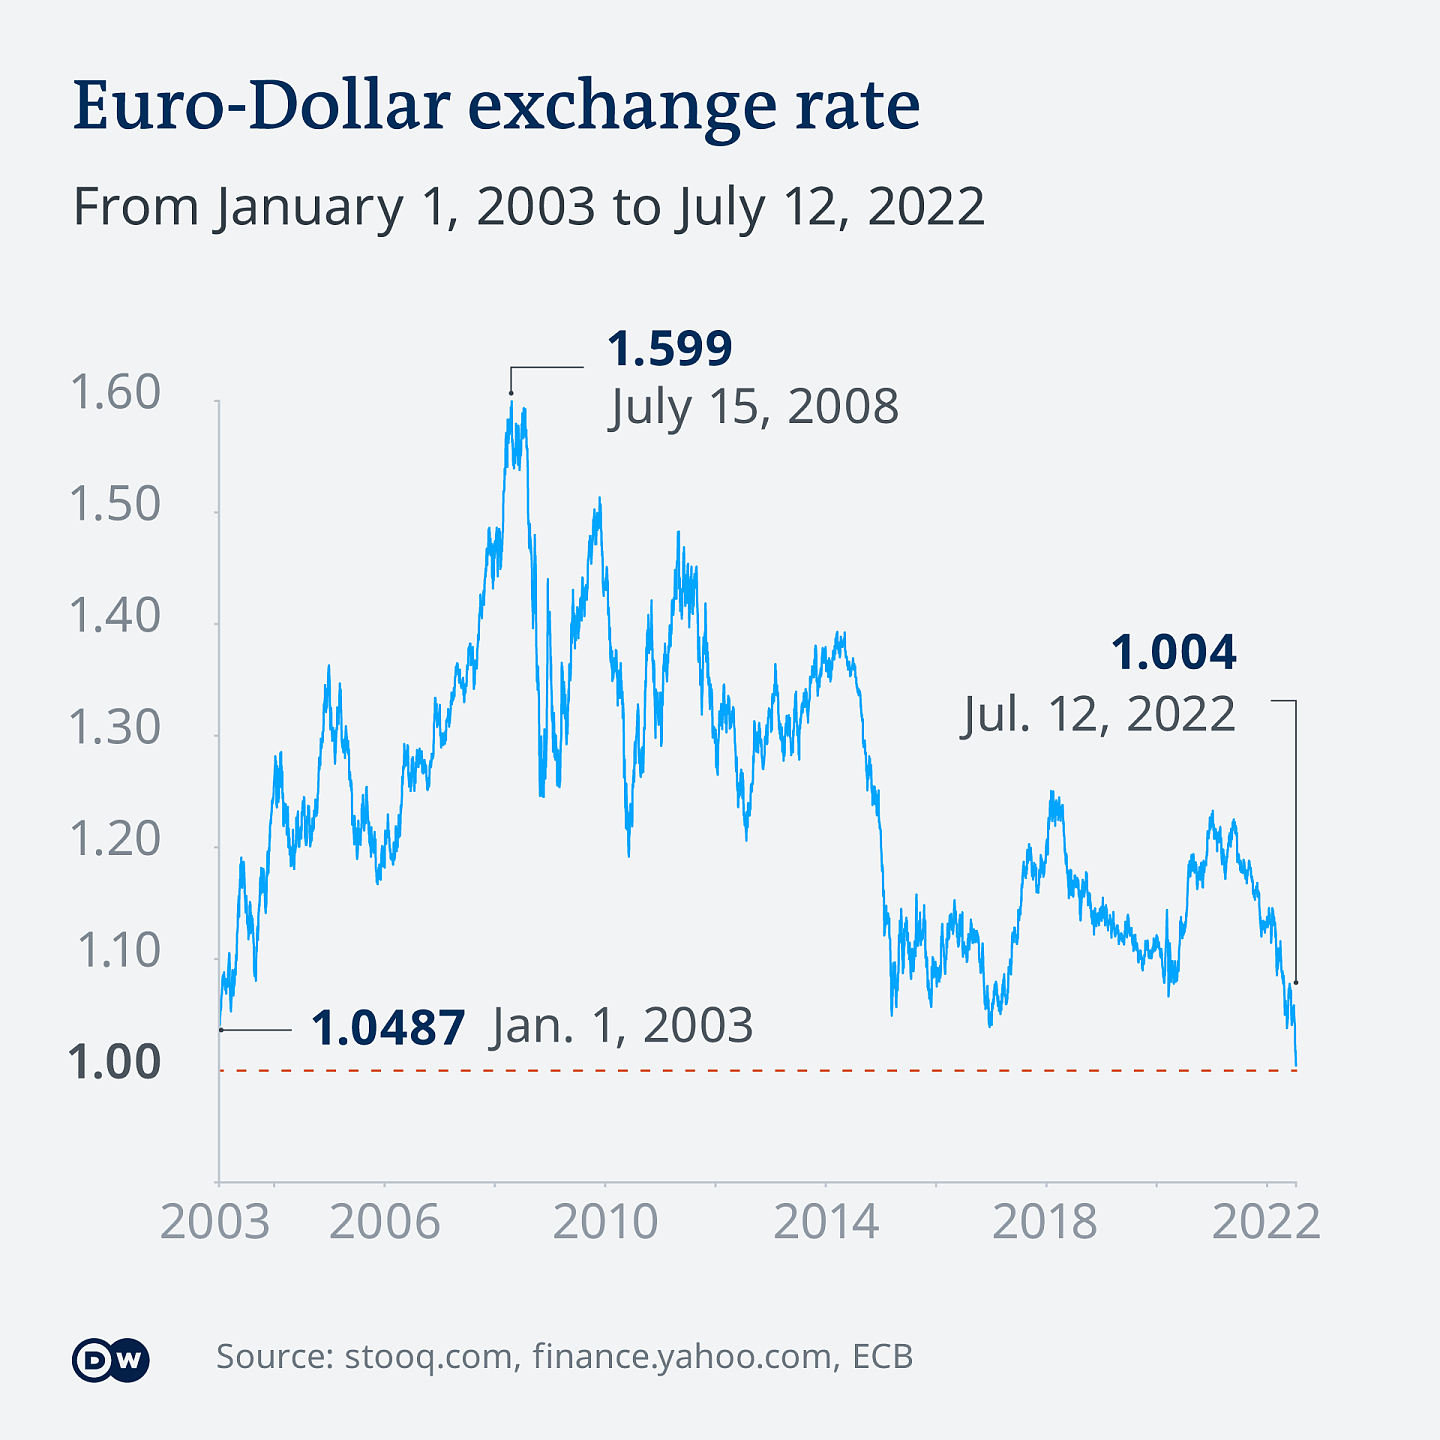 图中是从2003年1月1日至2022年7月12日欧元对美元的汇率走势